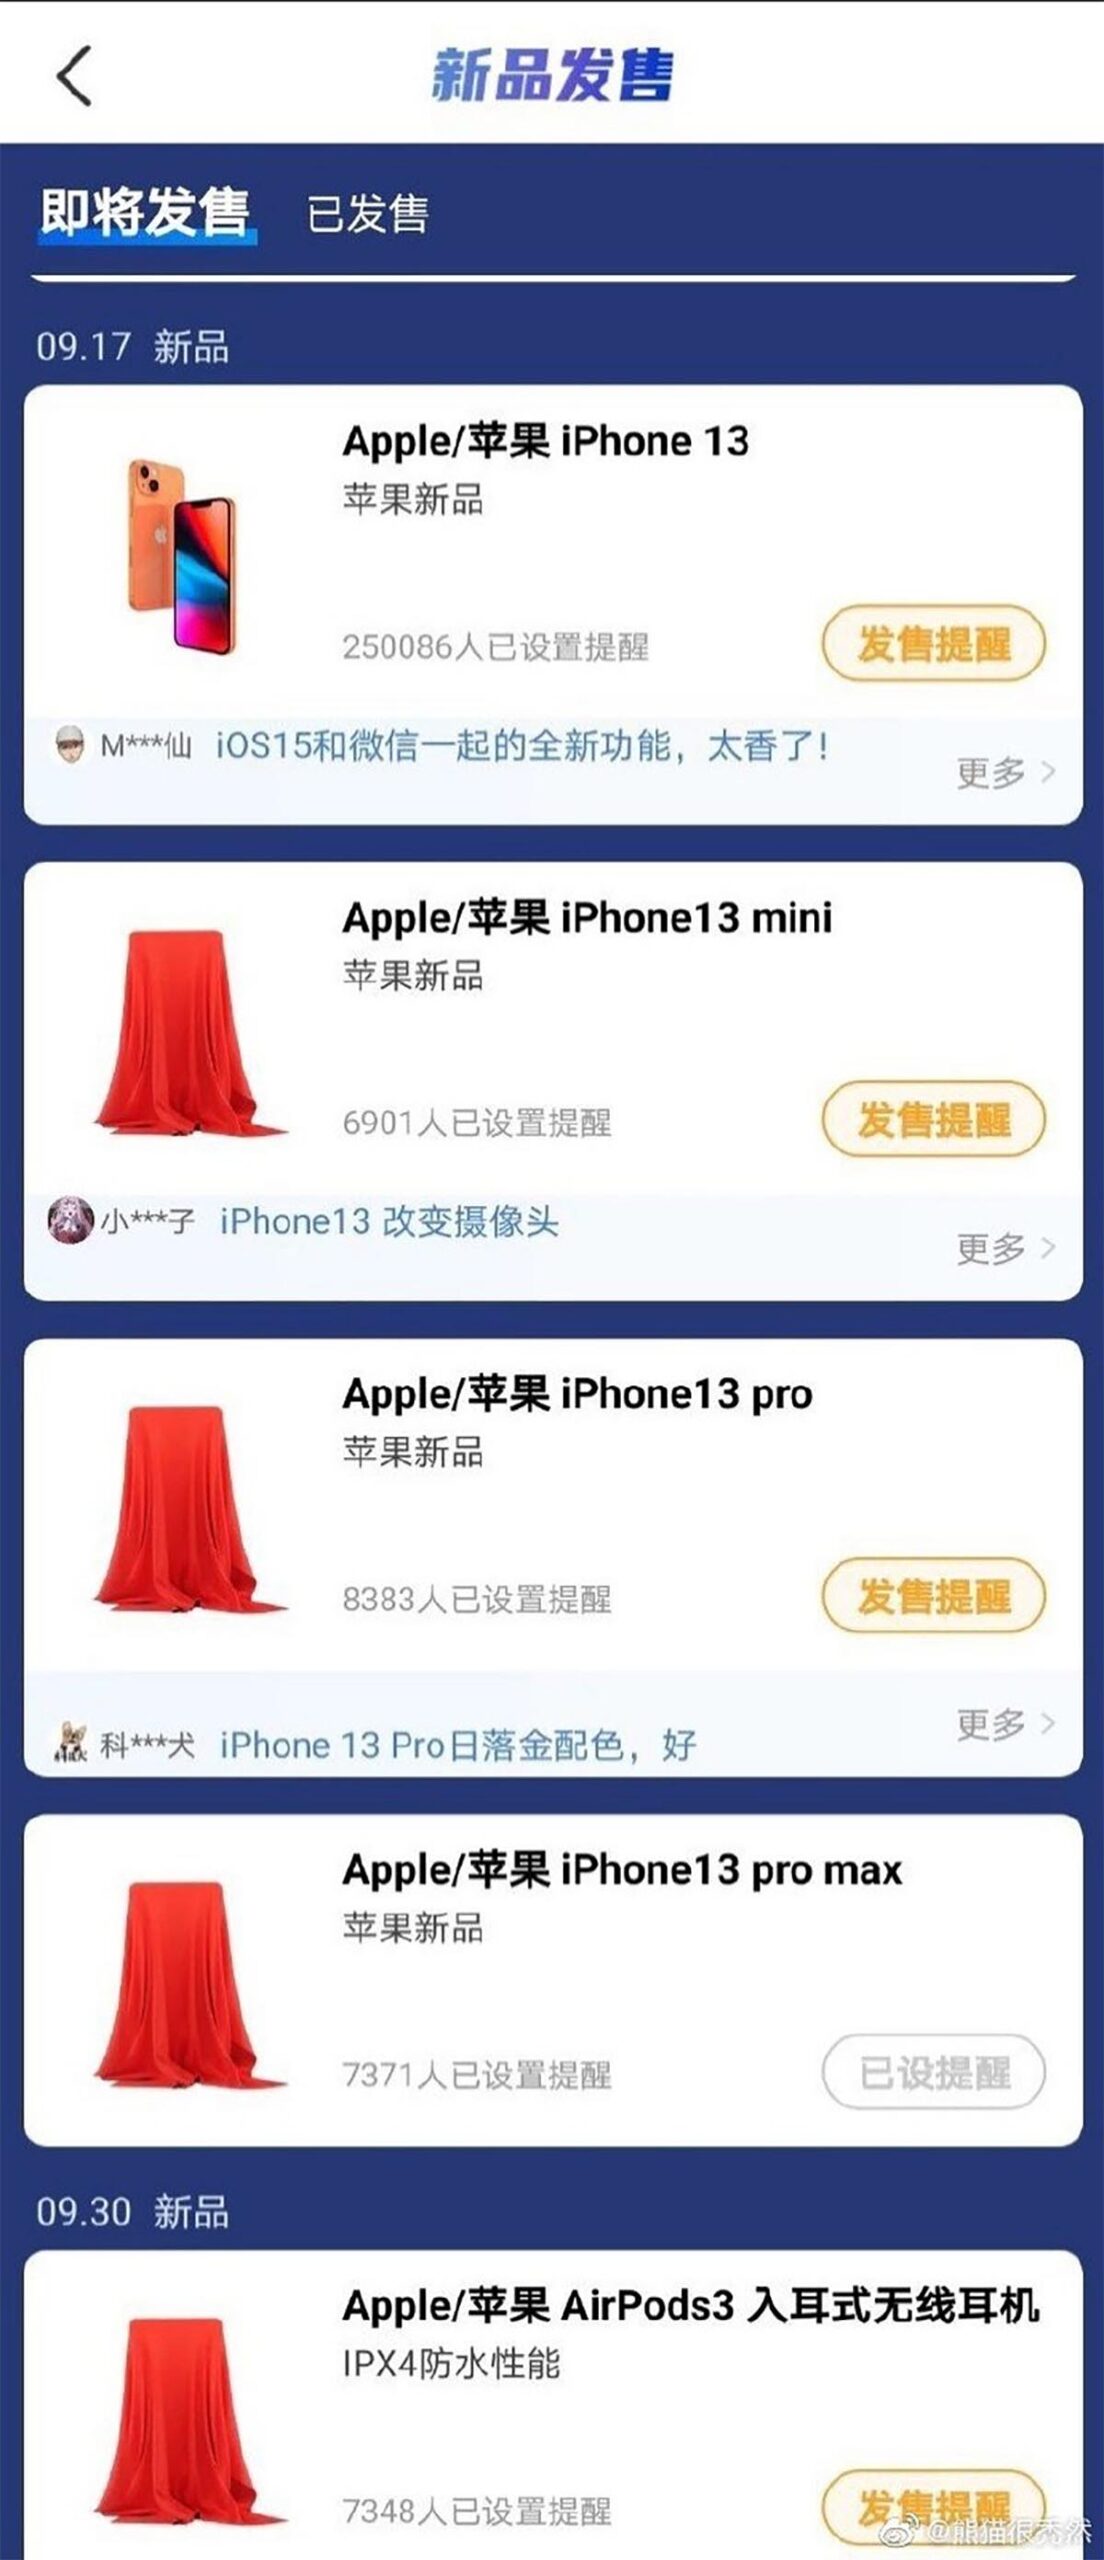 iPhone 13 il 17 settembre secondo un sito cinese